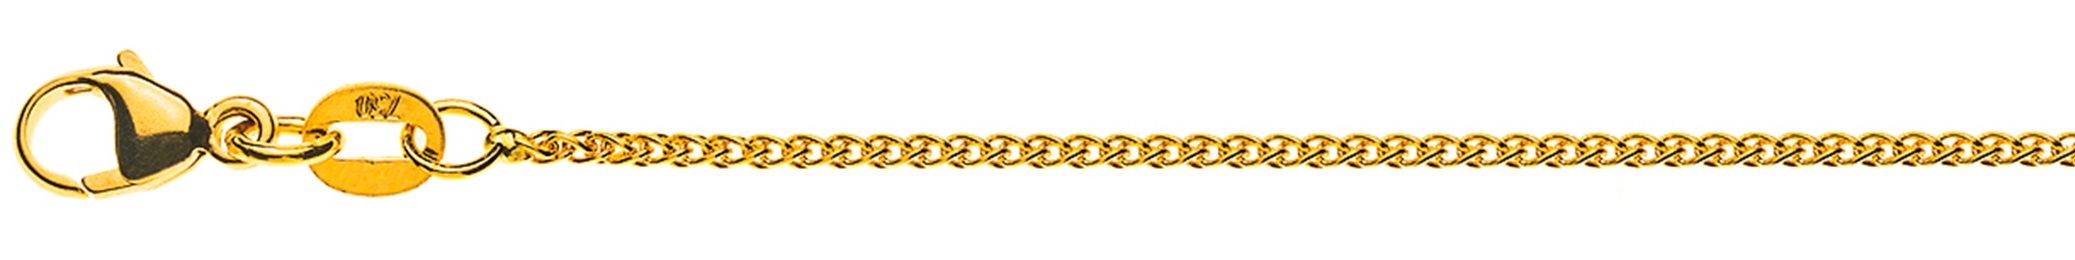 AURONOS Élégance Halskette Gelbgold 14K Zopfkette 42cm 1.2mm